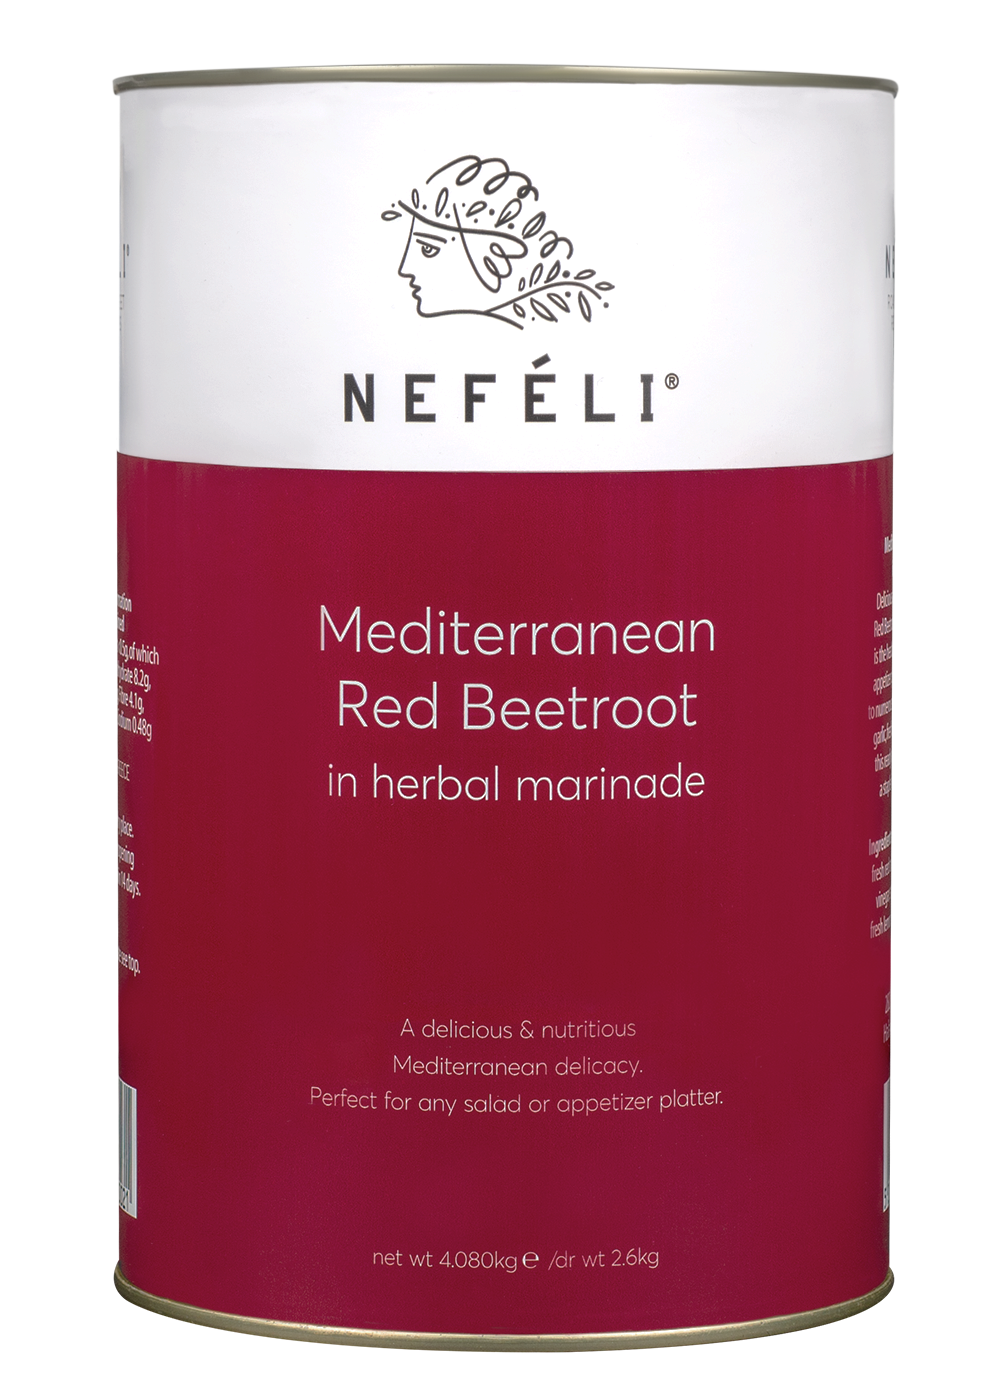 Mediterranean red beetroot in herbal marinade